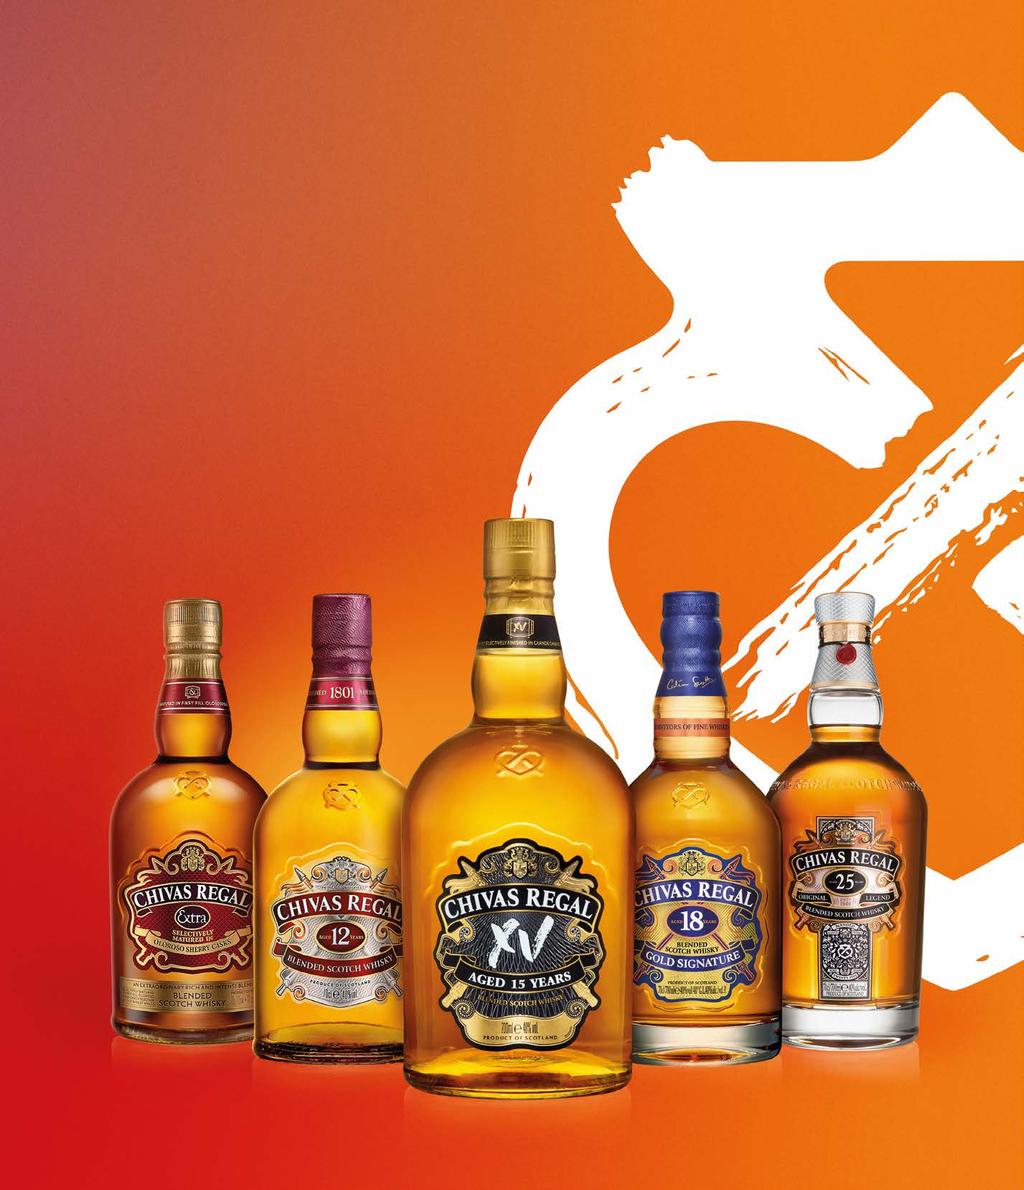 Chivas Regal XV Chivas Regal Scotch Whisky Extra 84 59 z VAT 104,05 zł Chivas Regal Scotch Whisky 12YO 69 97 z VAT 86,06 zł 113 66 z VAT 139,80 zł cena za 0,7 l